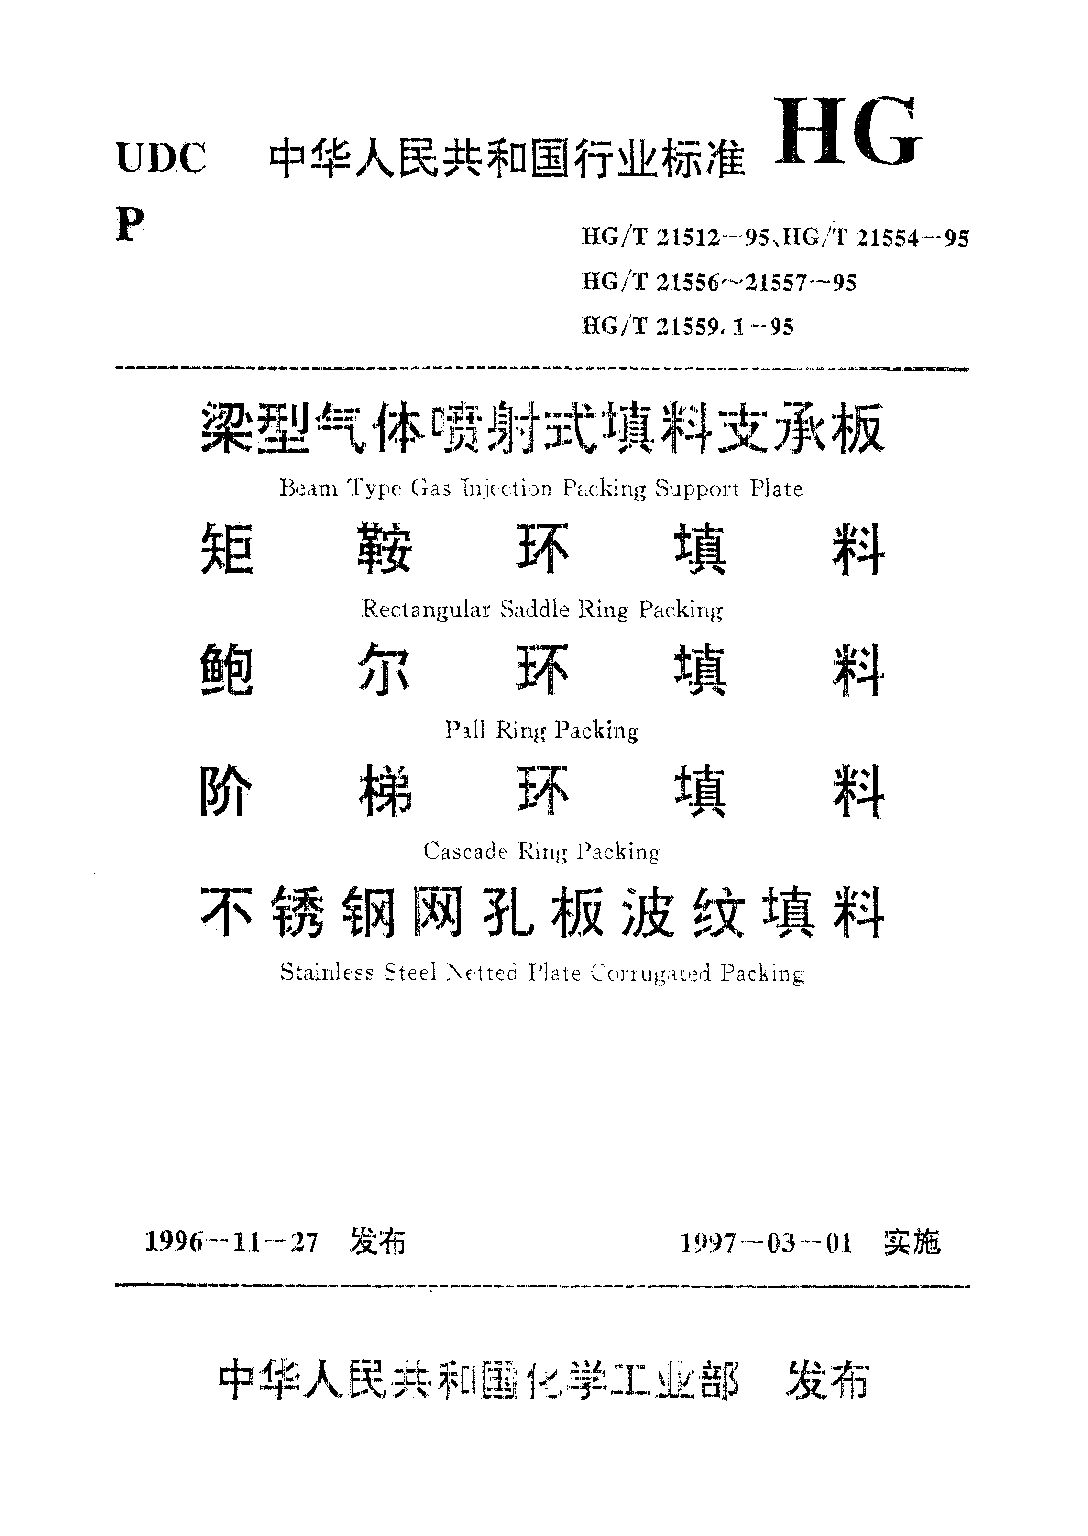 HG/T 21559.1-1995封面图